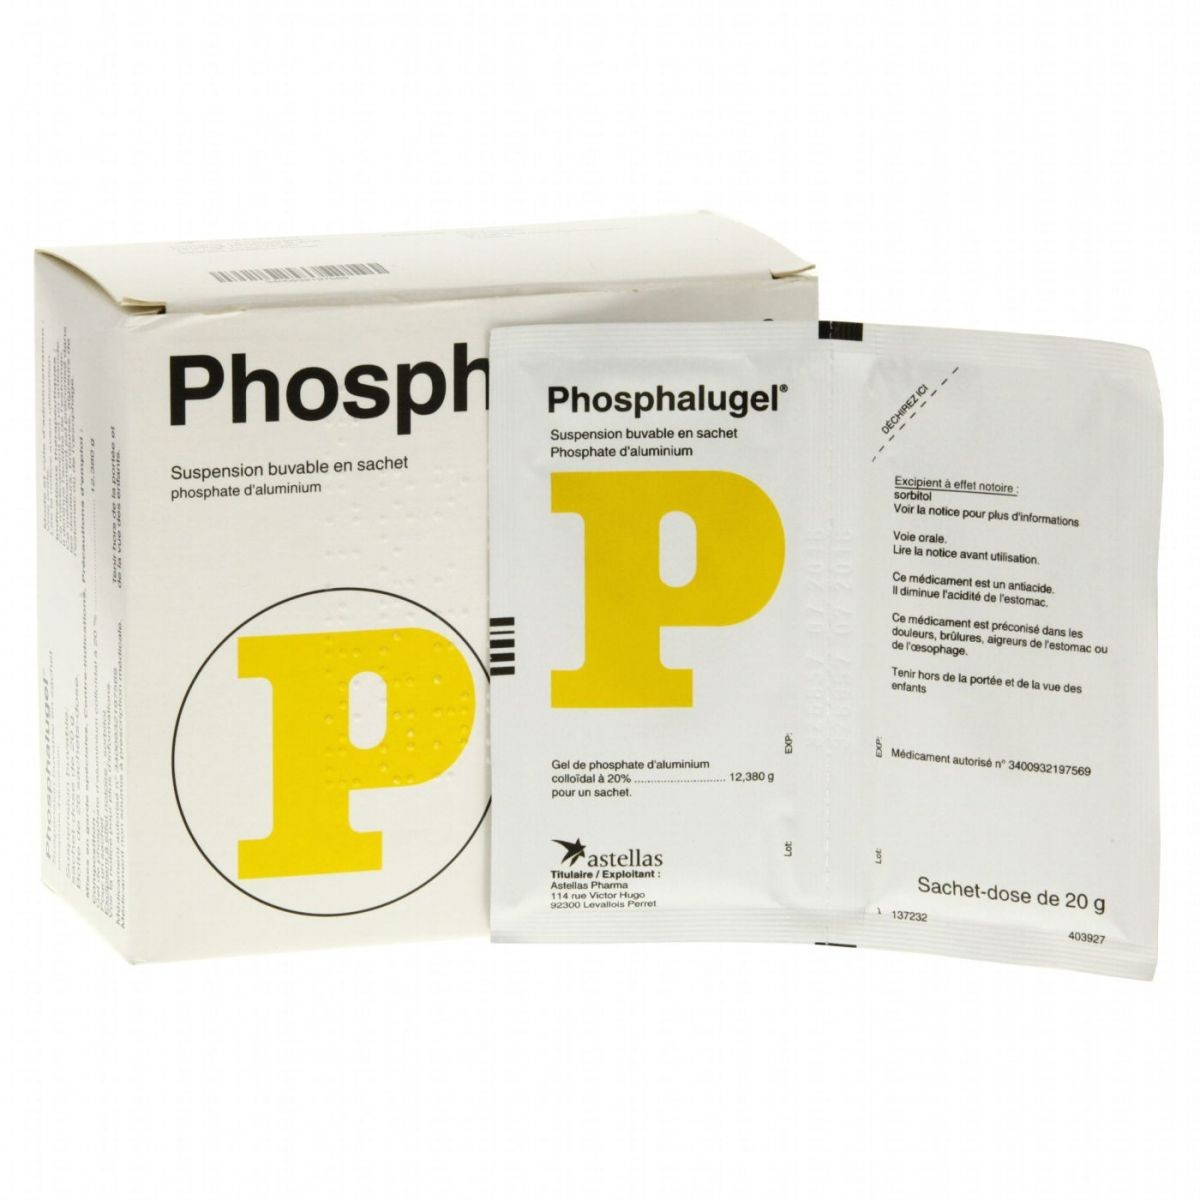 thuốc phosphalugel, cách dùng phosphalugel, phosphalugel thuốc, hướng dẫn sử dụng phosphalugel, phosphalugel là gì, thuốc phosphalugel uống trước hay sau ăn, thuốc phosphalugel cách dùng, thuốc phosphalugel có dùng được cho bà bầu, thuốc phosphalugel có tác dụng gì, phosphalugel thuốc biệt dược, cách uống thuốc phosphalugel, phosphalugel thành phần, phosphalugel stada, thuốc phosphalugel trị bệnh gì, phosphalugel cách sử dụng, thuốc phosphalugel 20g, thuốc phosphalugel uống trước hay sau khi ăn, thuốc phosphalugel là thuốc gì, thuoc phosphalugel uong luc nao, thuốc sữa phosphalugel, phosphalugel công dụng, phosphalugel thuộc nhóm nào, phosphalugel của công ty nào, thuốc phosphalugel giá bao nhiêu, thuốc phosphalugel của pháp, thuốc phosphalugel giá, thuốc phosphalugel uống khi nào, thuốc phosphalugel uống như thế nào, phosphalugel gói, thuốc phosphalugel chữa bệnh gì, thuoc phosphalugel co anh huong den thai nhi, thuốc phosphalugel cho bà bầu, thuốc dạ dày phosphalugel giá bao nhiêu, uong thuoc phosphalugel khi mang thai, thuốc phosphalugel nên uống khi nào, cách dùng thuốc sữa phosphalugel, thuoc phosphalugel co thai uong duoc khong, thuoc phosphalugel uong the nao, uống thuốc phosphalugel, thuốc phosphalugel bao nhiêu tiền, thuốc phosphalugel cho con bú, thuốc phosphalugel hướng dẫn sử dụng, thuốc phosphalugel liều dùng, thuoc phosphalugel cong dung, thuoc phosphalugel tac dung gi, thuốc phosphalugel trẻ em, thuốc gói phosphalugel, phosphalugel thuốc gì, thuốc phosphalugel có tốt không, mua thuốc phosphalugel, thuốc nước phosphalugel, thuốc phosphalugel phụ nữ cho con bú, thuốc phosphalugel p, thuốc phosphalugel sđk, thuốc phosphalugel susp, thuoc uong phosphalugel